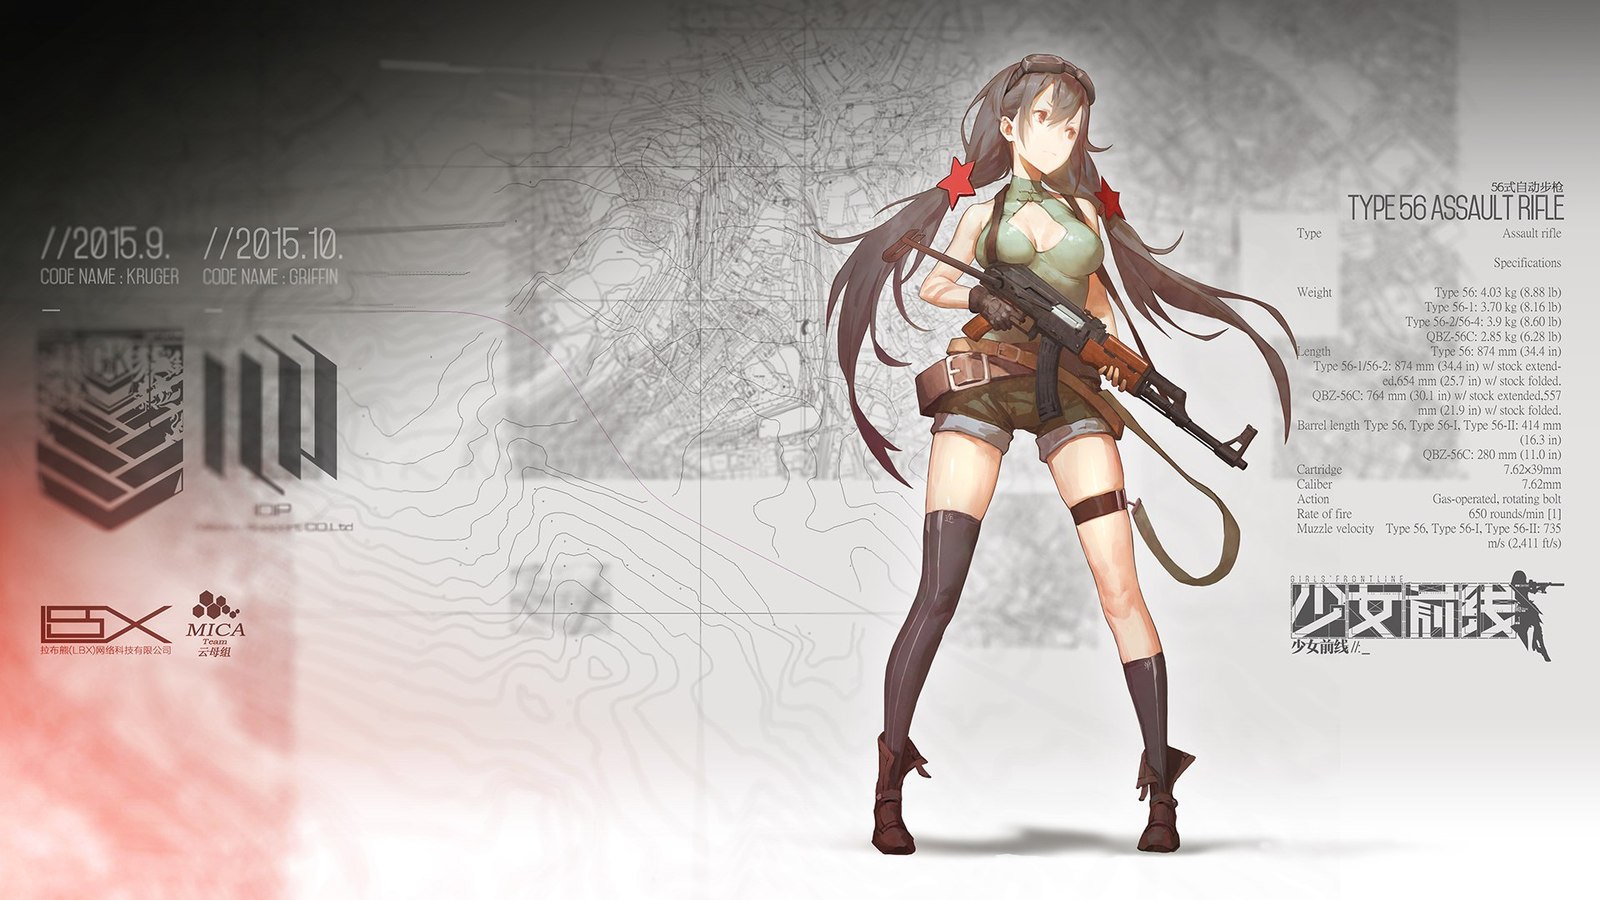 Anime art - Anime art, Anime, Weapon, Girls frontline, Type 56, Mauser